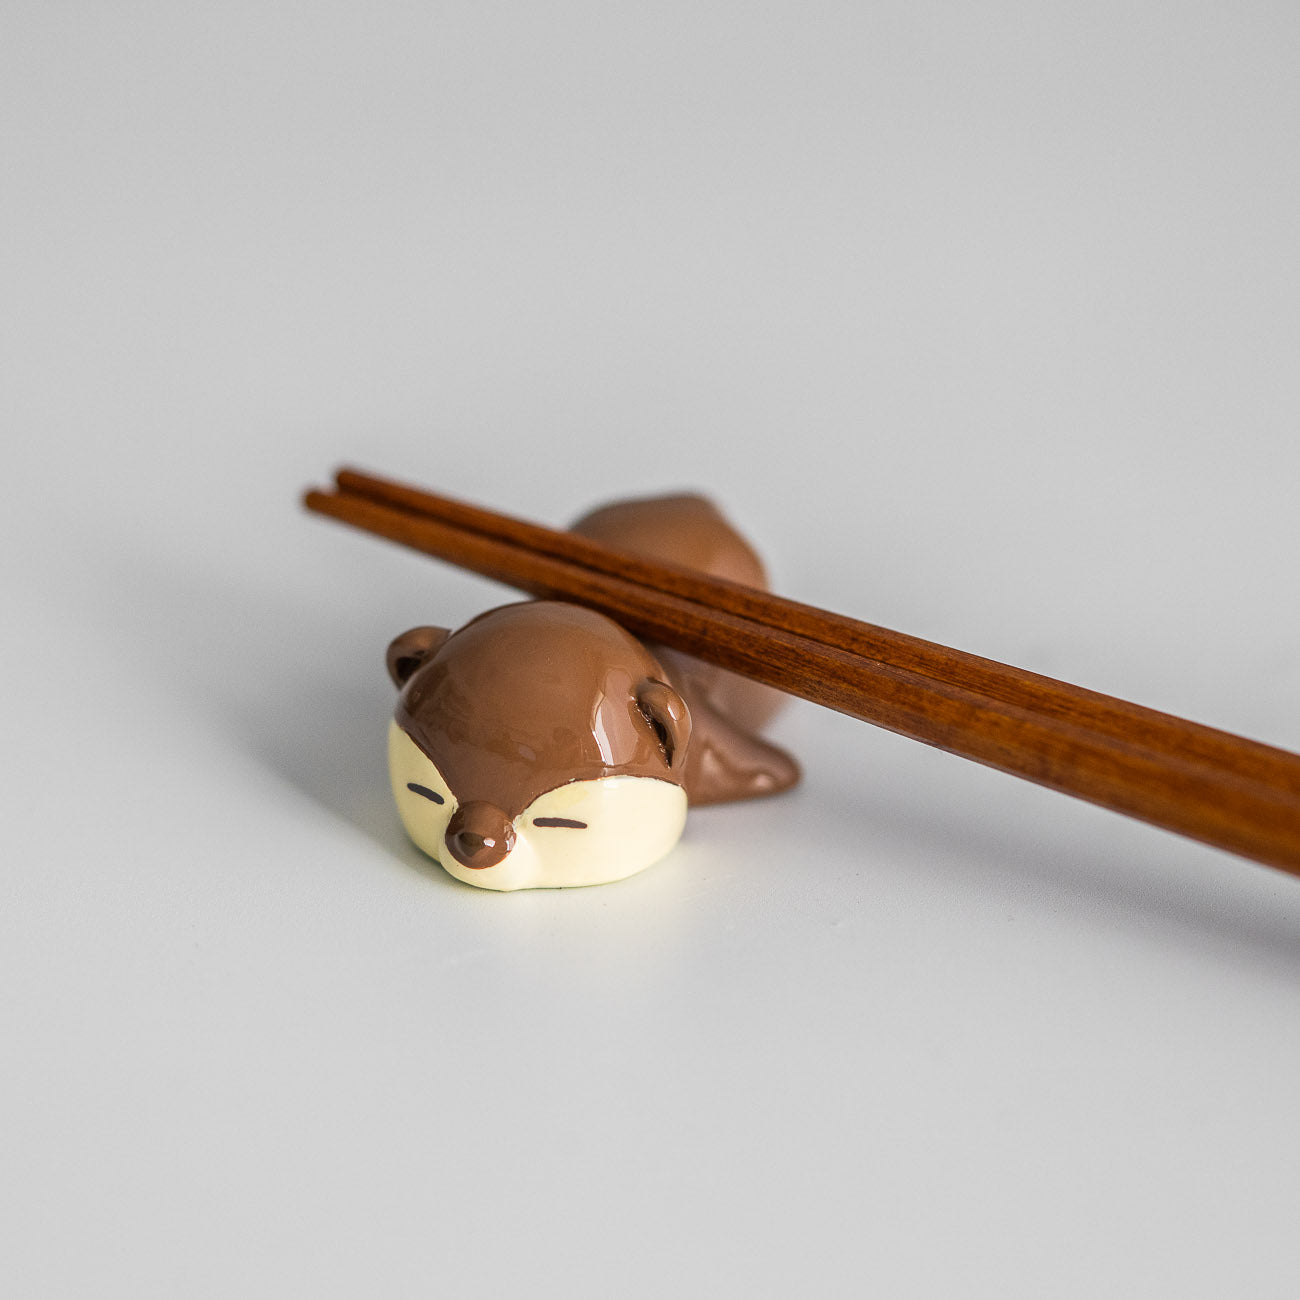 Chopstick Rest - Otter